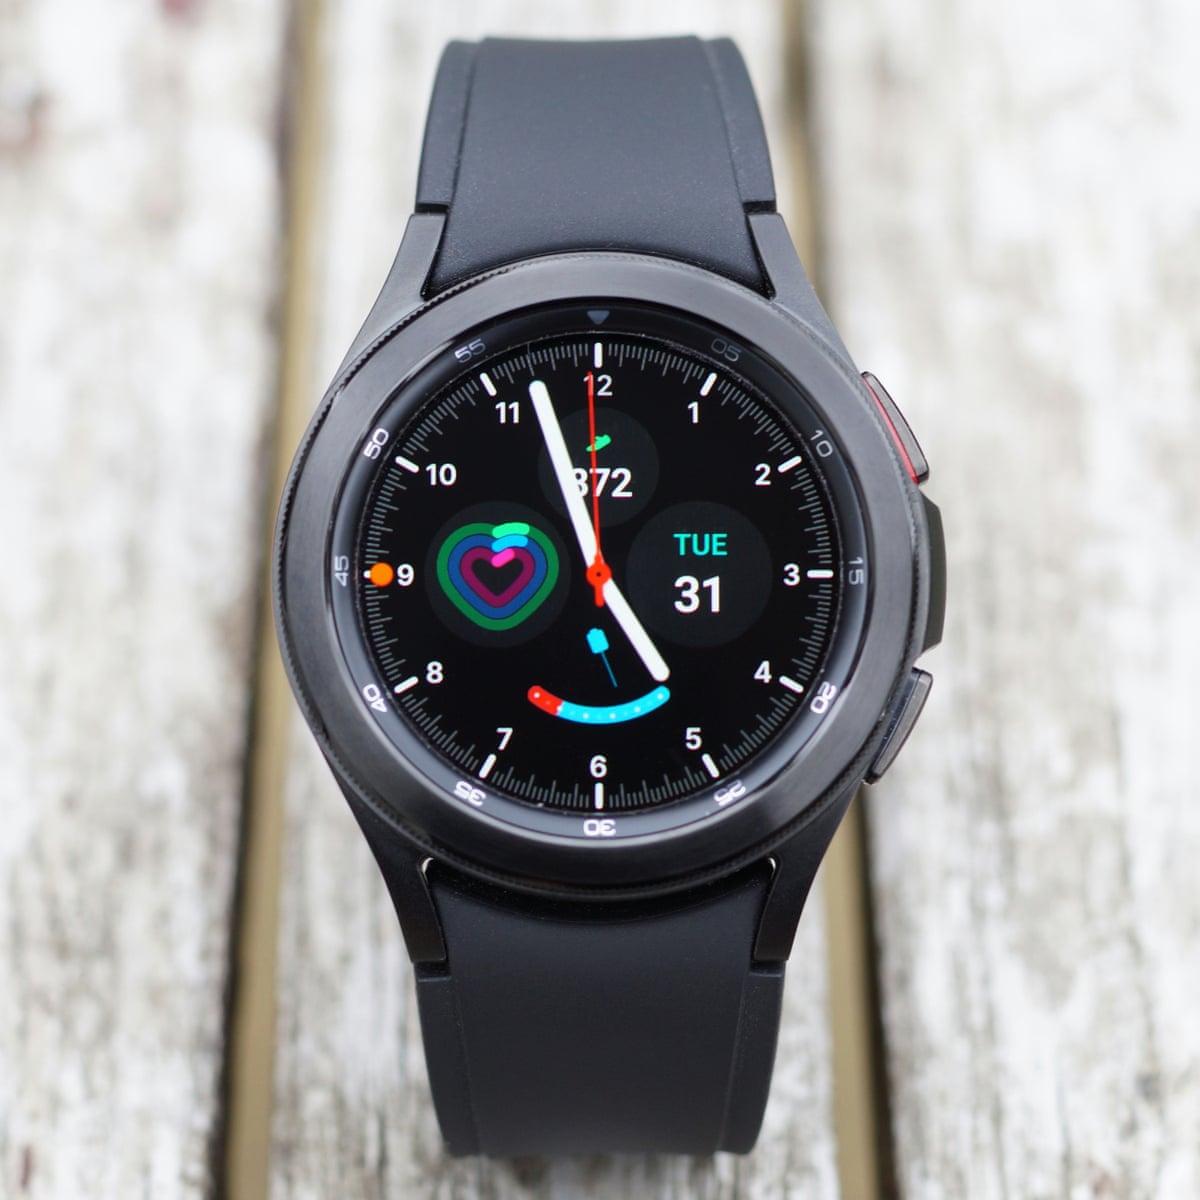 Ik was verrast gisteren pasta Samsung Galaxy Watch 4 review: Google smartwatch raises bar | Samsung | The  Guardian